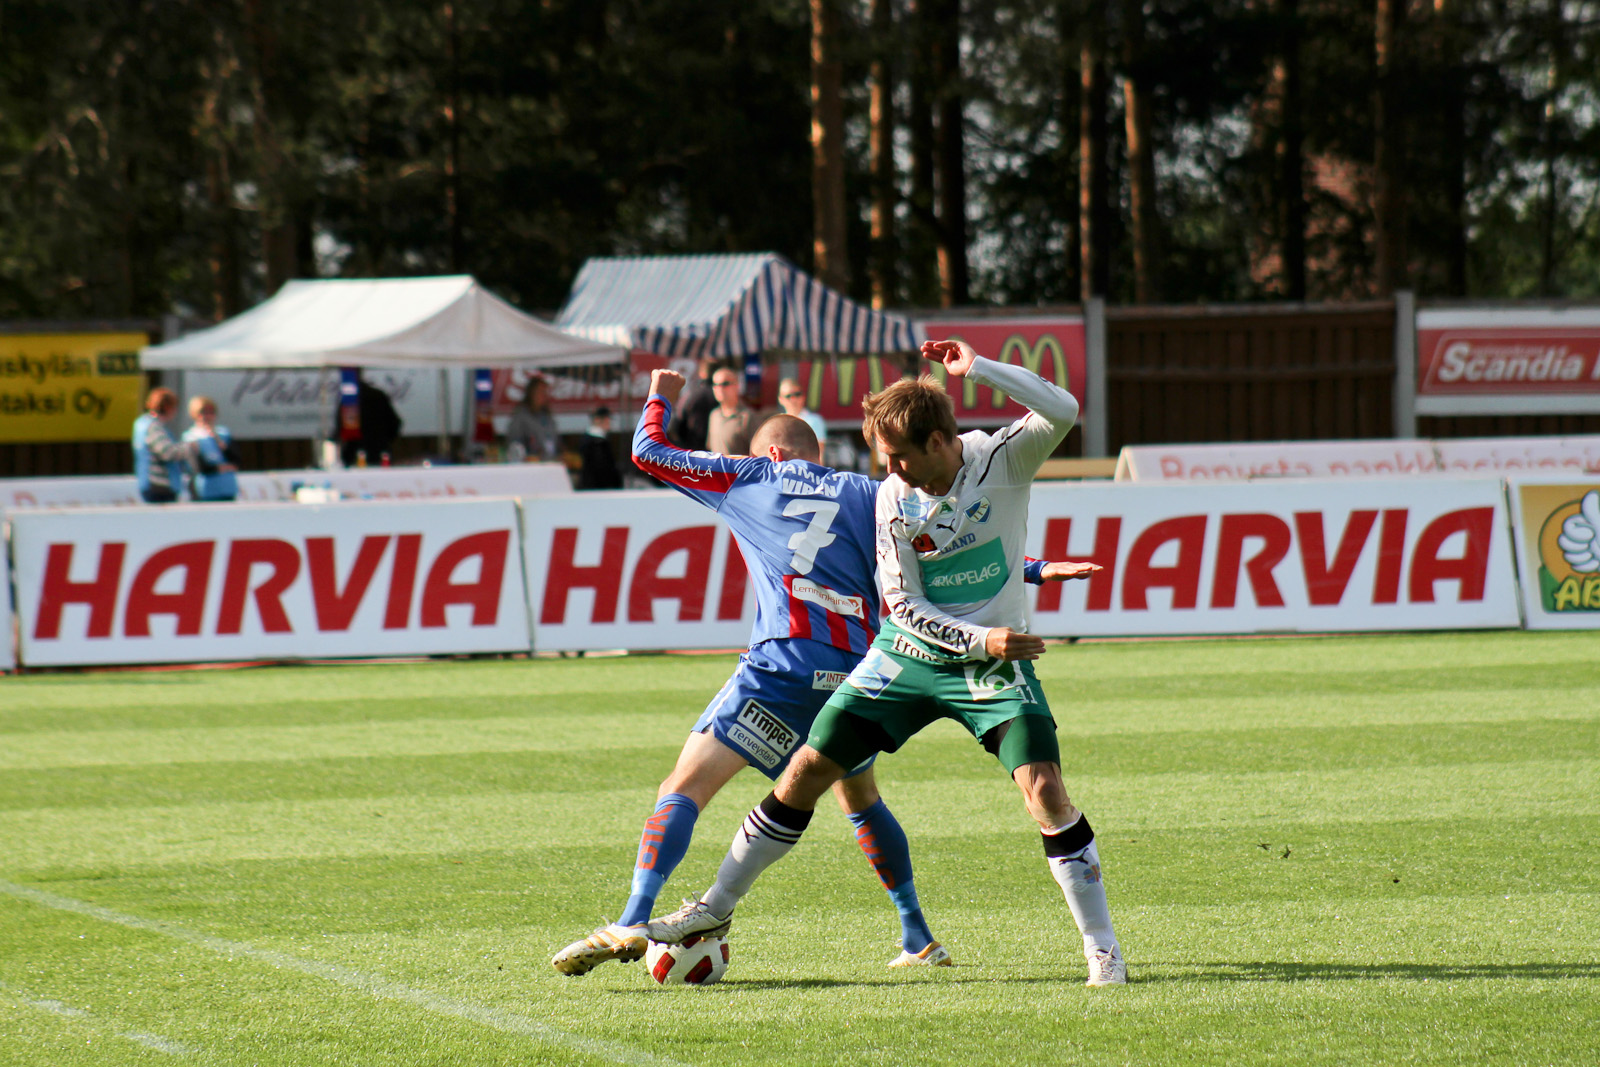 Vaikka ottelu olikin koko perheen teematapahtuma, voittaminen ei ollut JJK:lle lastenleikkiä vaan IFK väänsi vahvasti vastaan läpi ottelun.